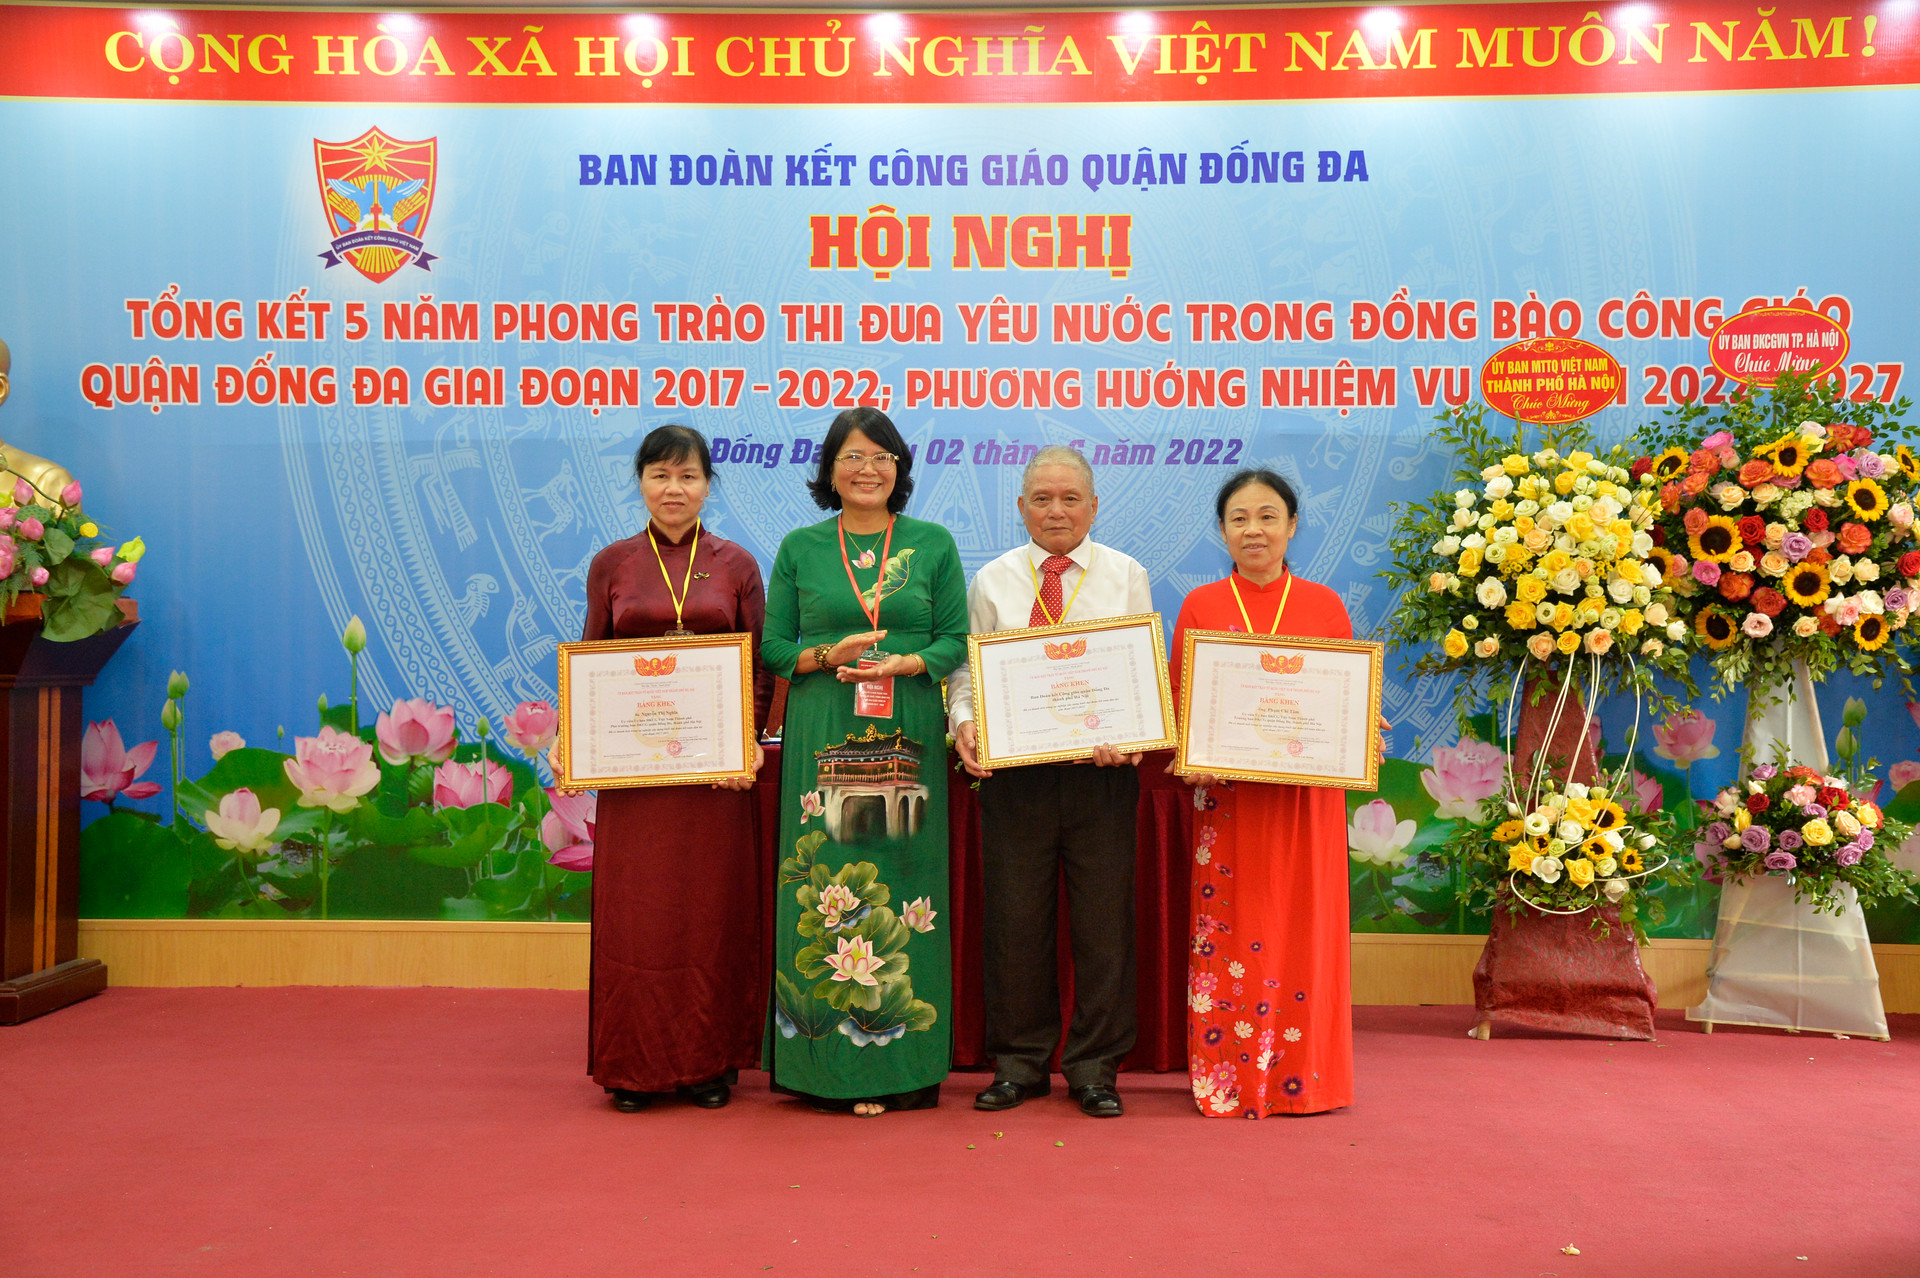 Bà Nguyễn Thị Kim Dung, Phó Chủ tịch Ủy ban MTTQ thành phố Hà Nội tặng bằng khen của thành phố cho các tập thể, cá nhân có thành tích xuất sắc.